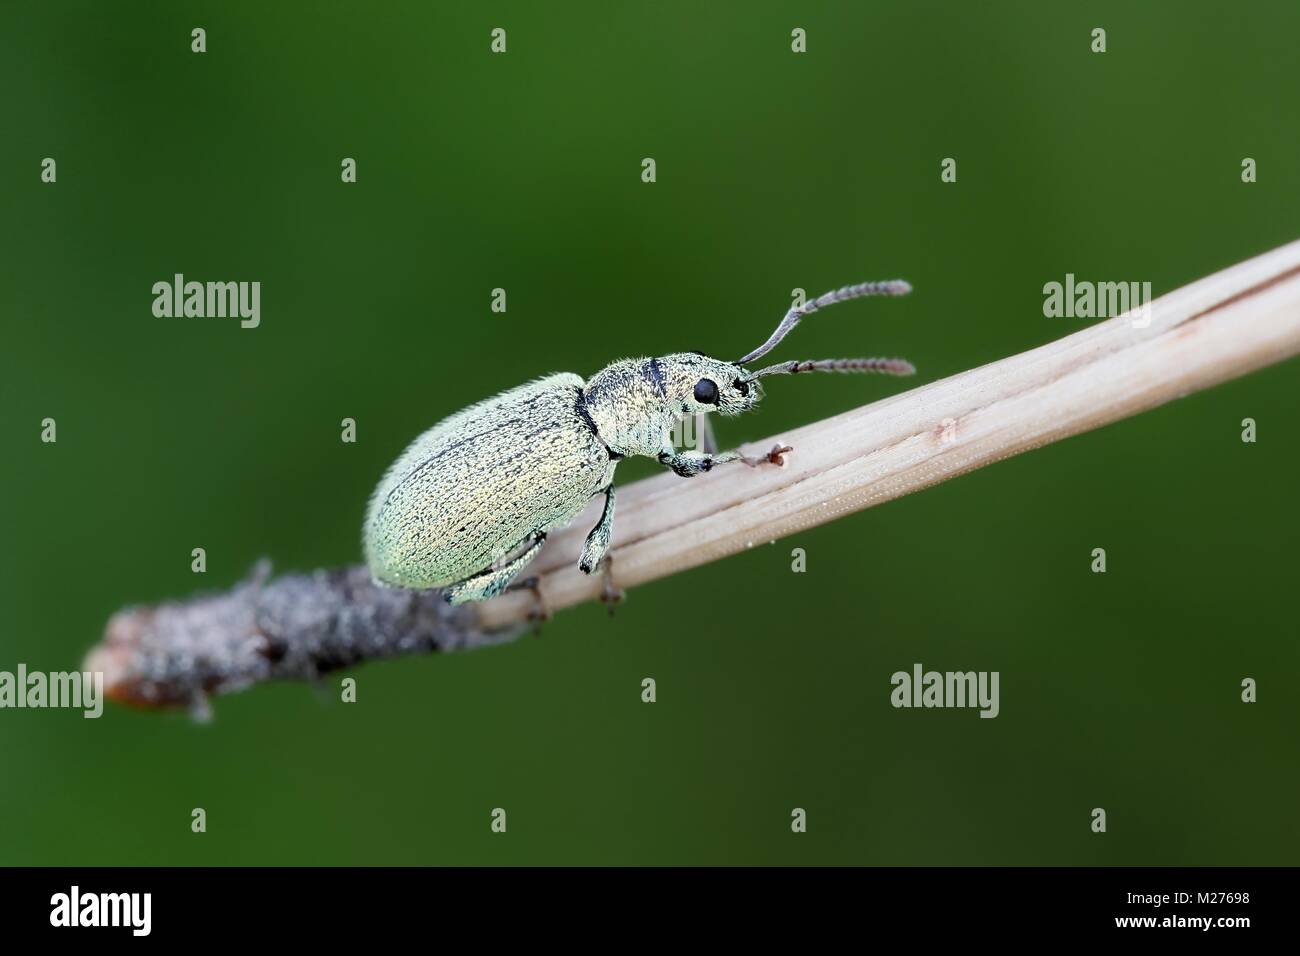 Green leaf weevil beetle Stock Photo